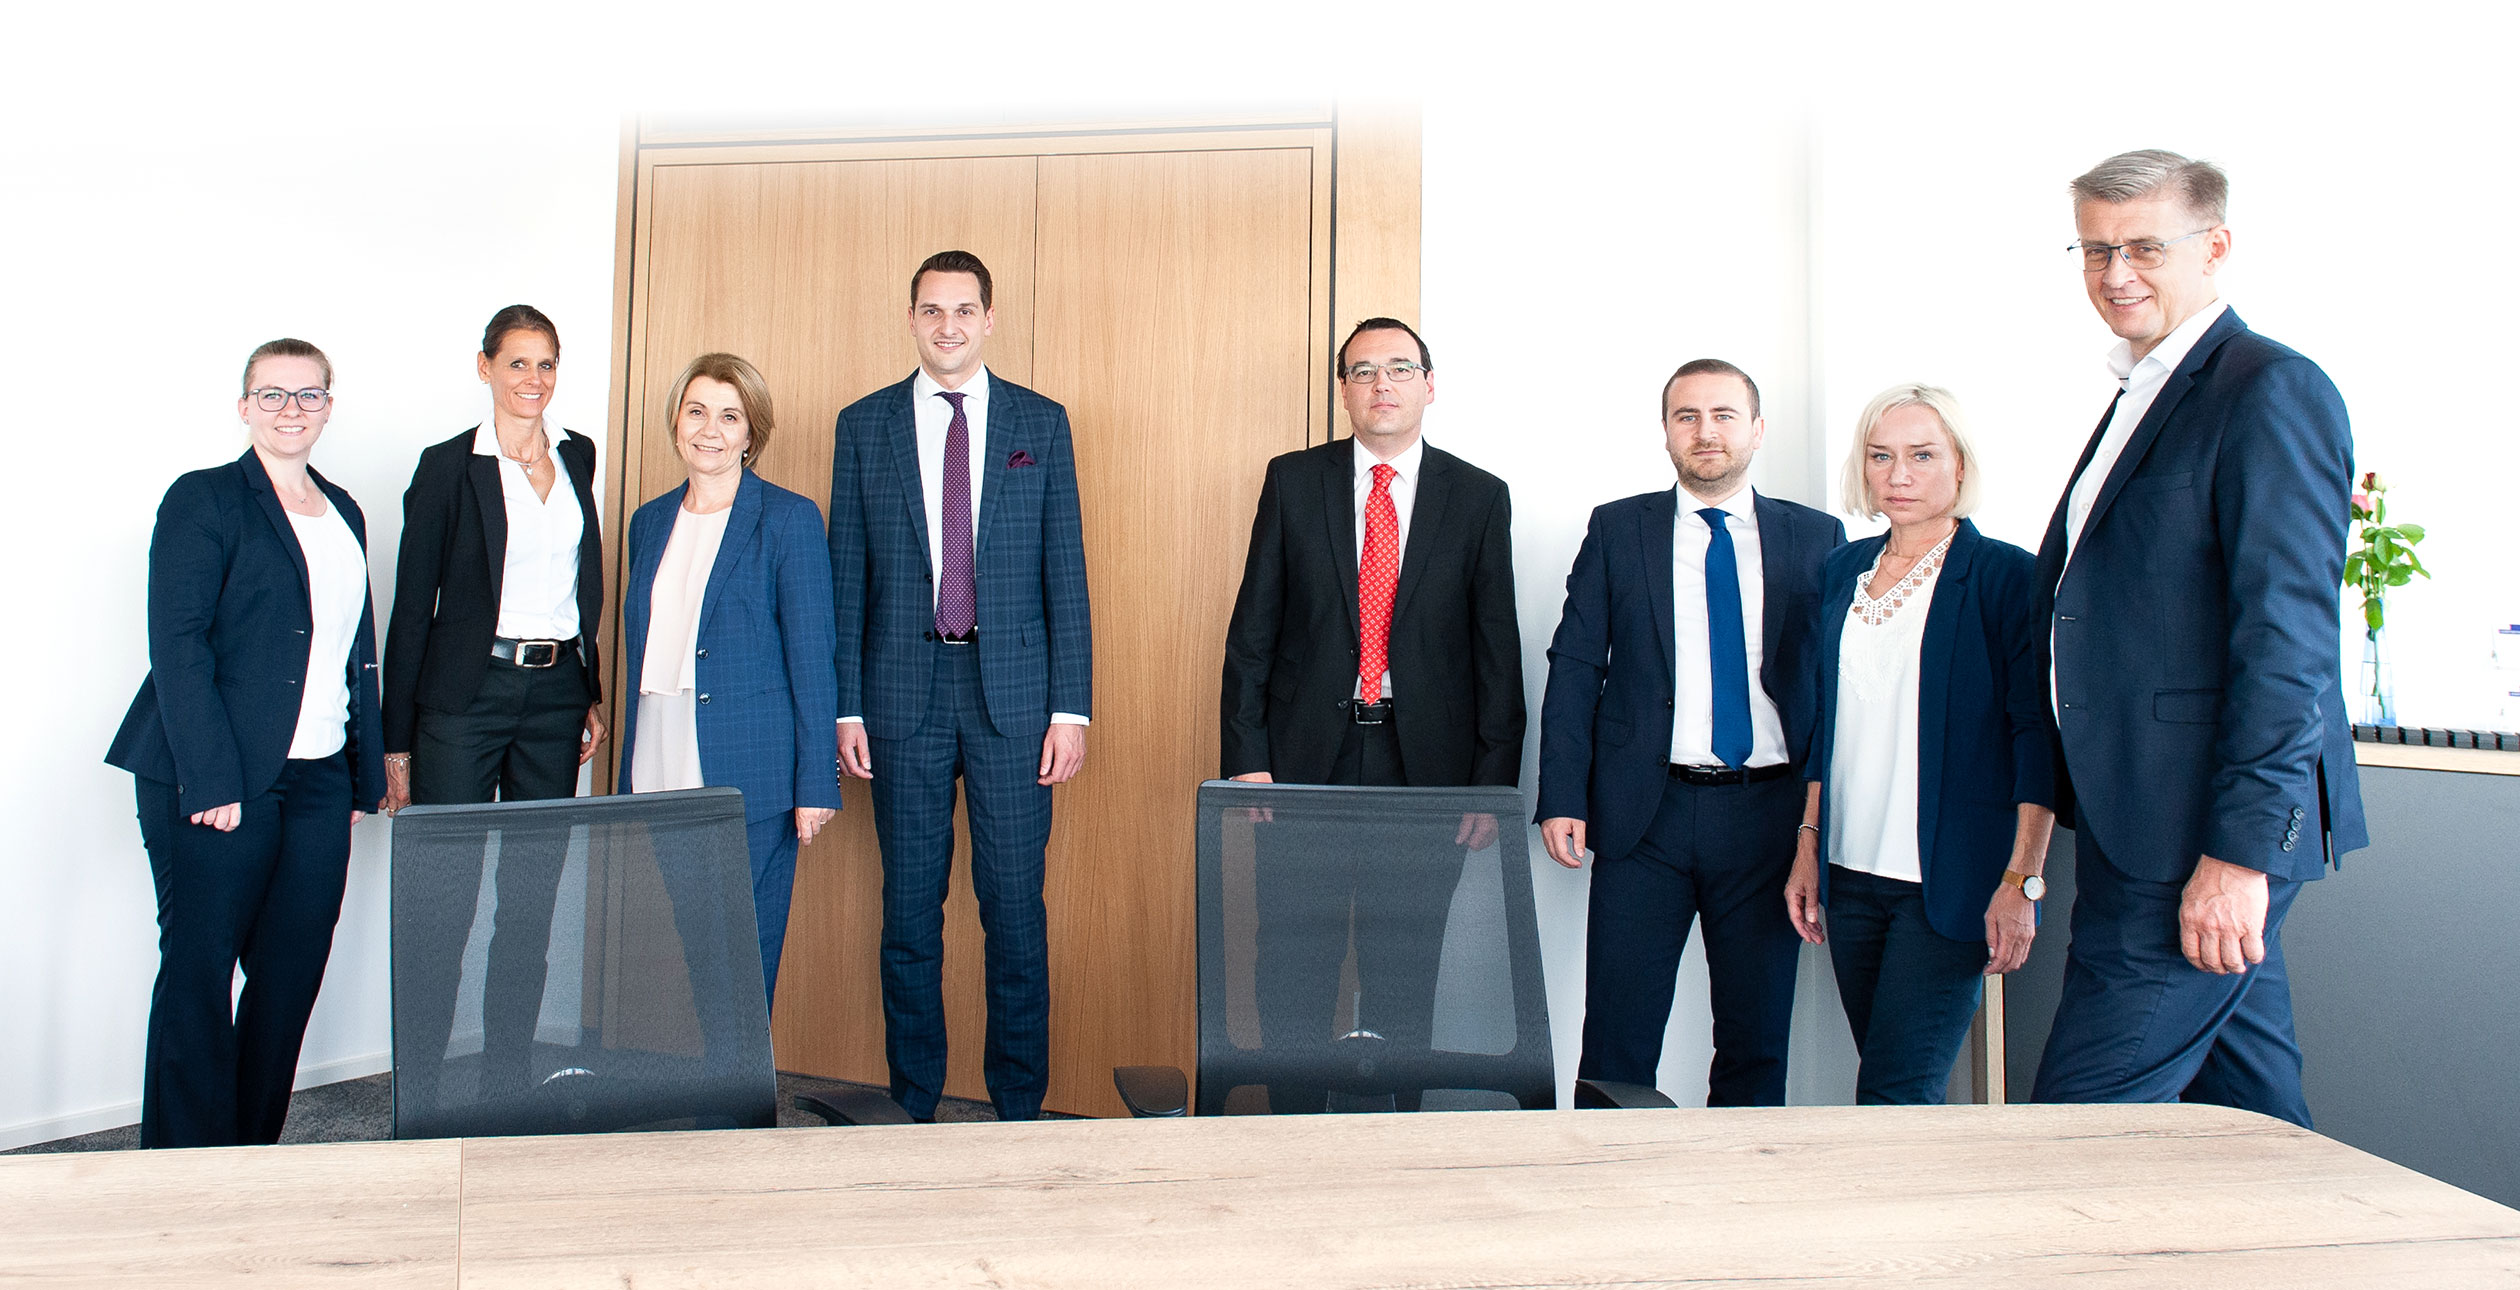 LAWPARTNERS rechtsanwälte – ein starkes Team für unsere Klienten.